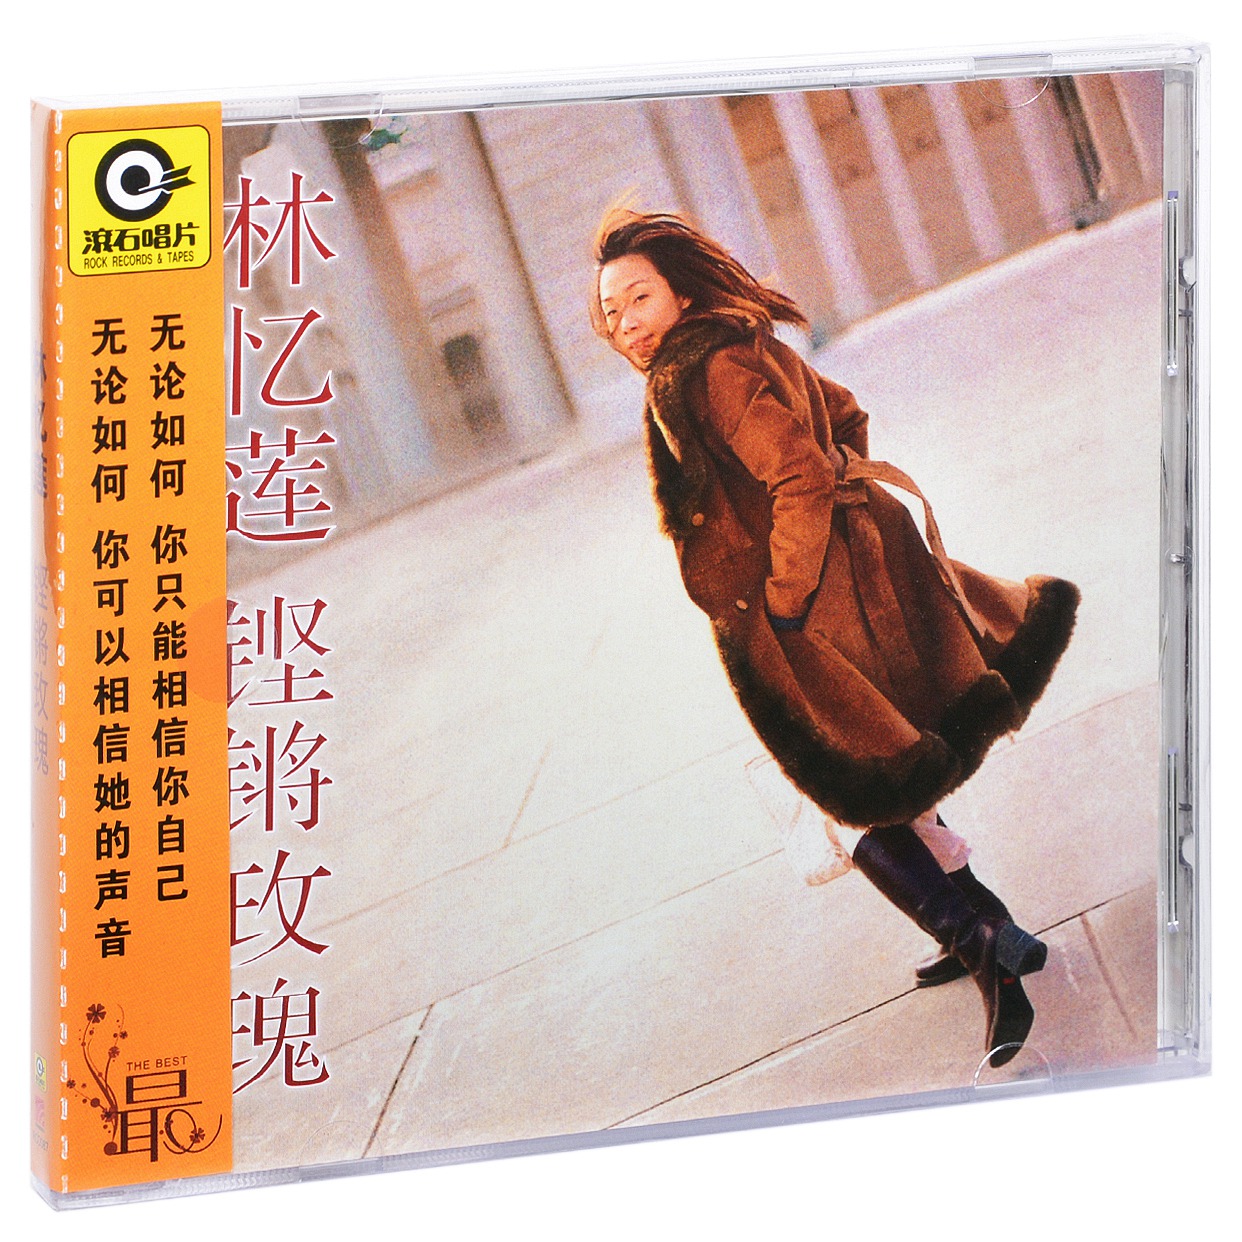 正版 林忆莲 铿锵玫瑰 1999专辑CD+歌词本 滚石唱片系列